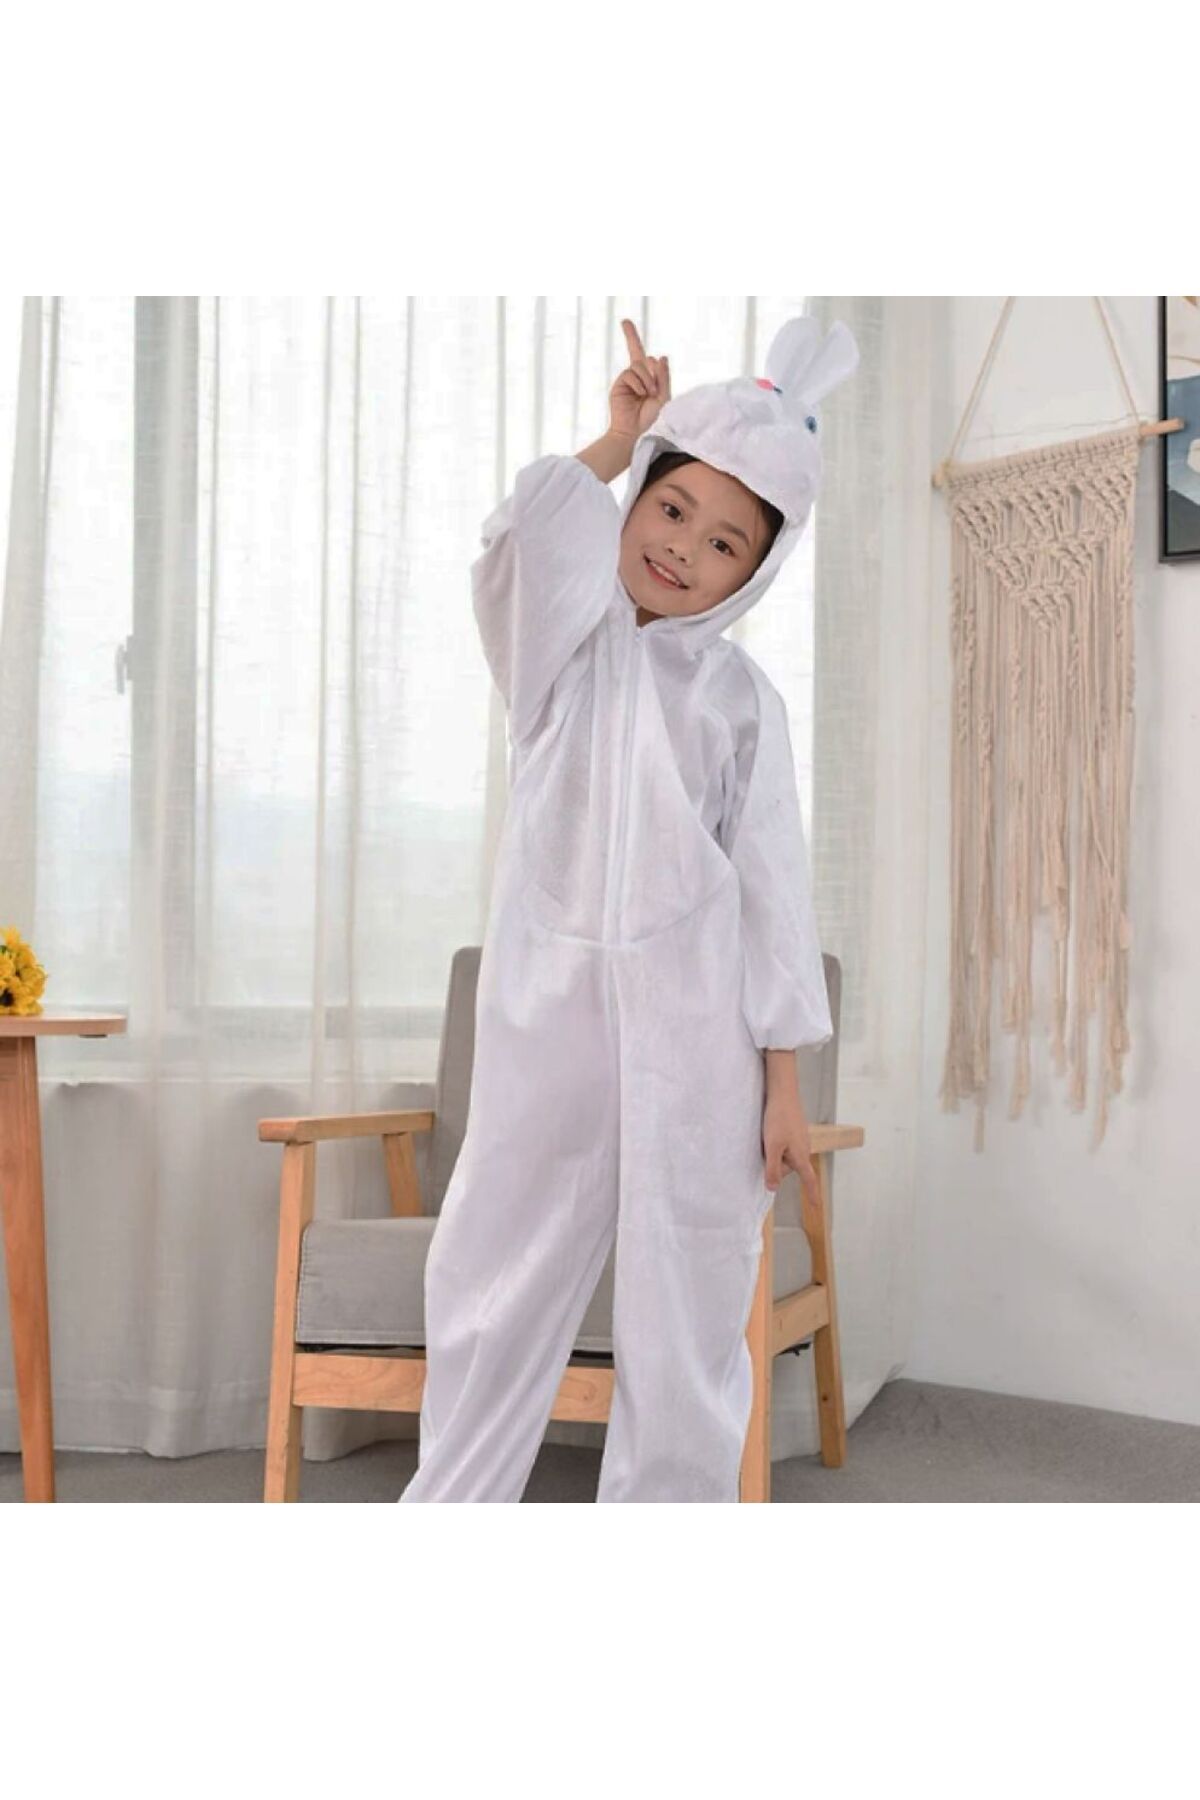 Skygo Çocuk Tavşan Kostümü Beyaz Renk 4-5 Yaş 100 cm